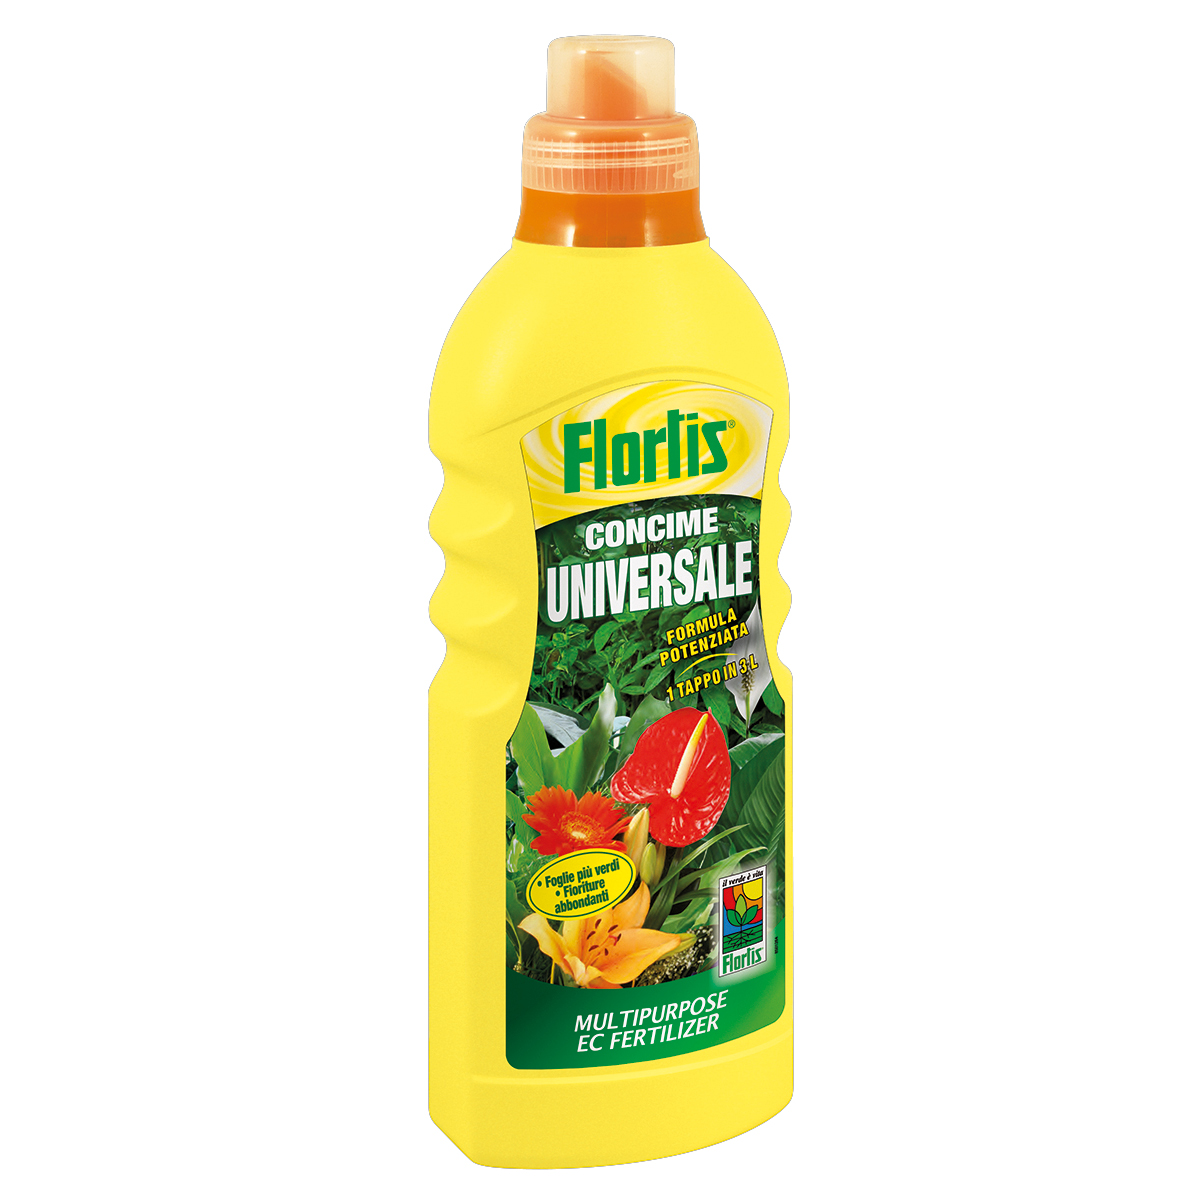 Flortis Concime Universale 1.150 g